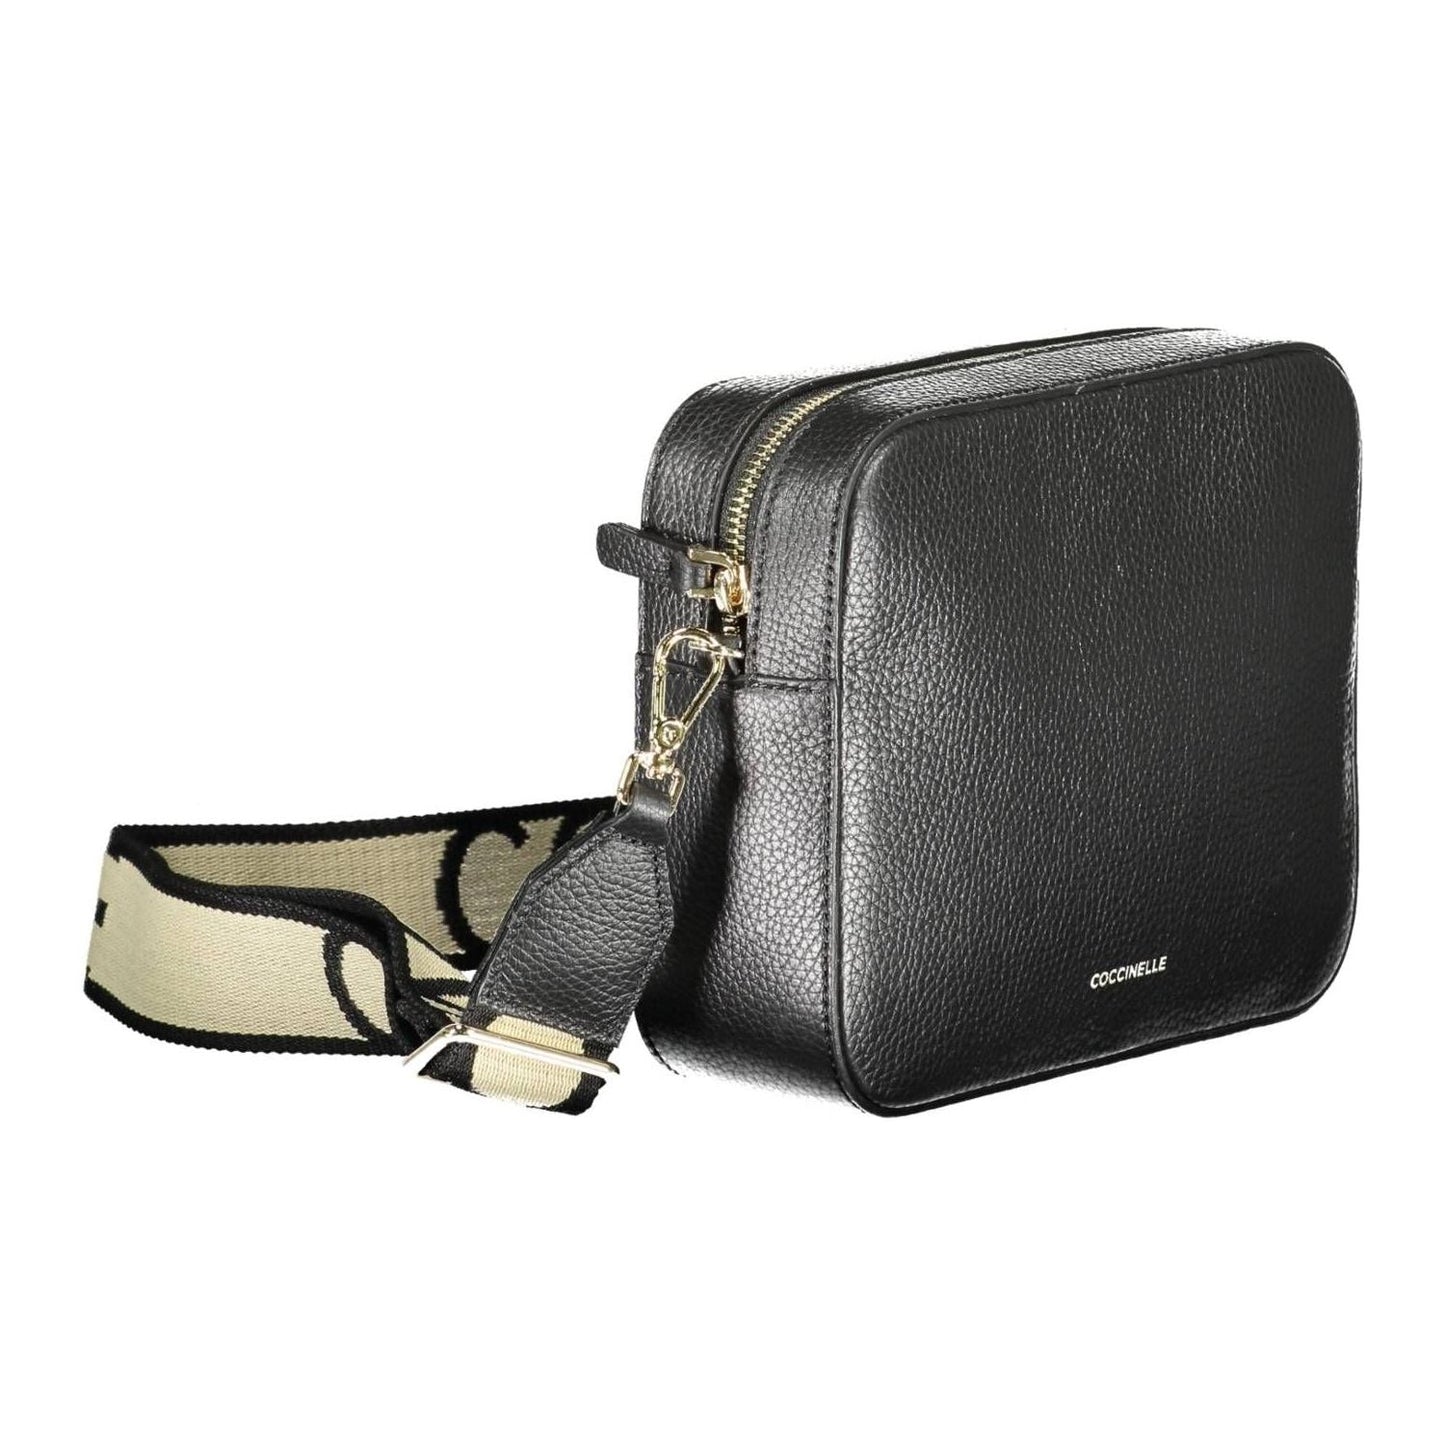 Elegant Black Leather Shoulder Bag with Contrasting Details